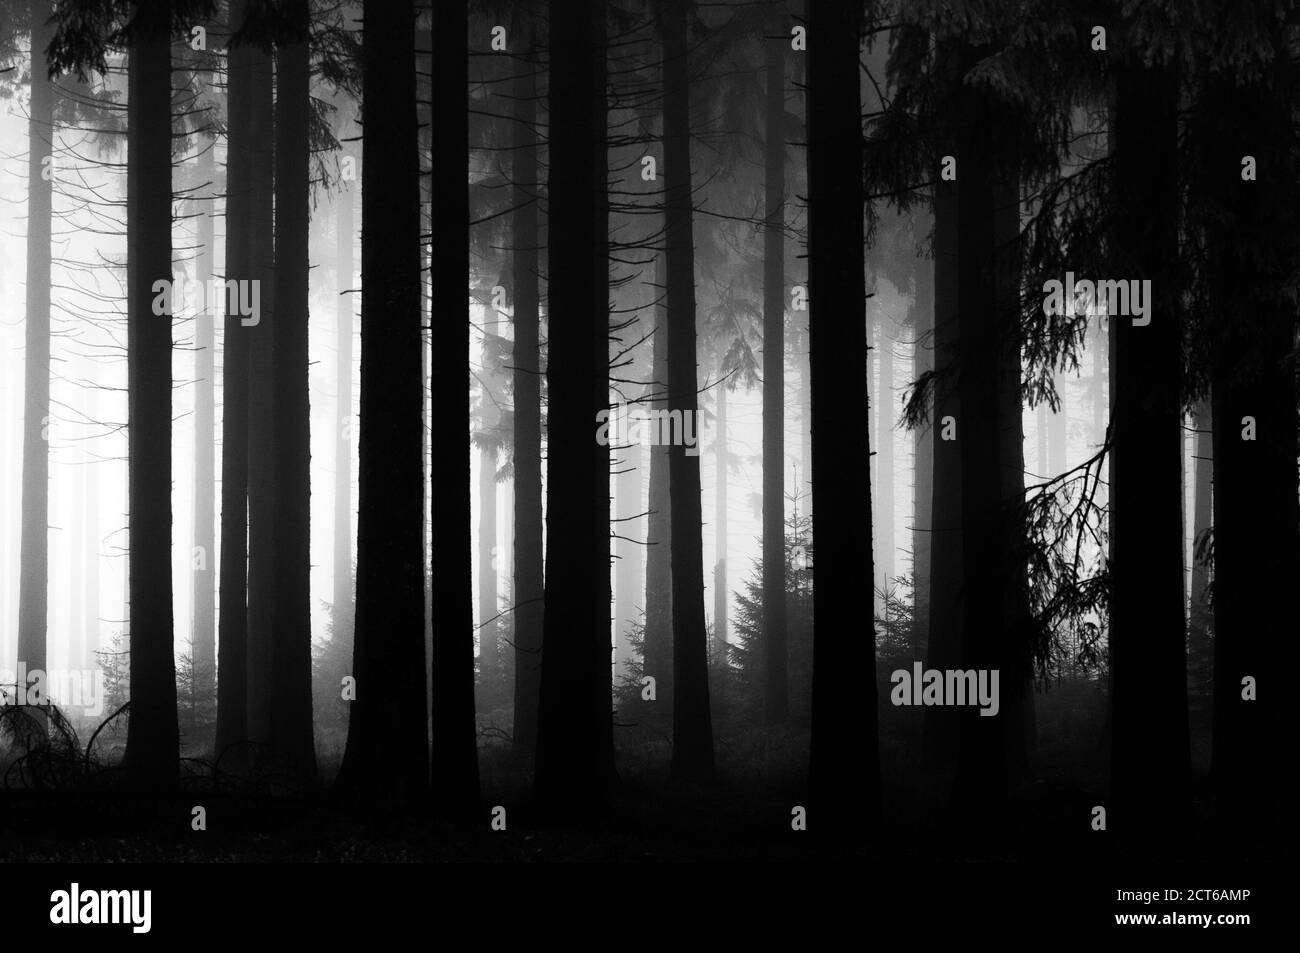 Brouillard dans le bois de pin - Belgique *** Légende locale *** paysage,automne,brouillard,pins,bois,forêt,repos,calme,tranquillité,atmosphère,noir/blanc Banque D'Images